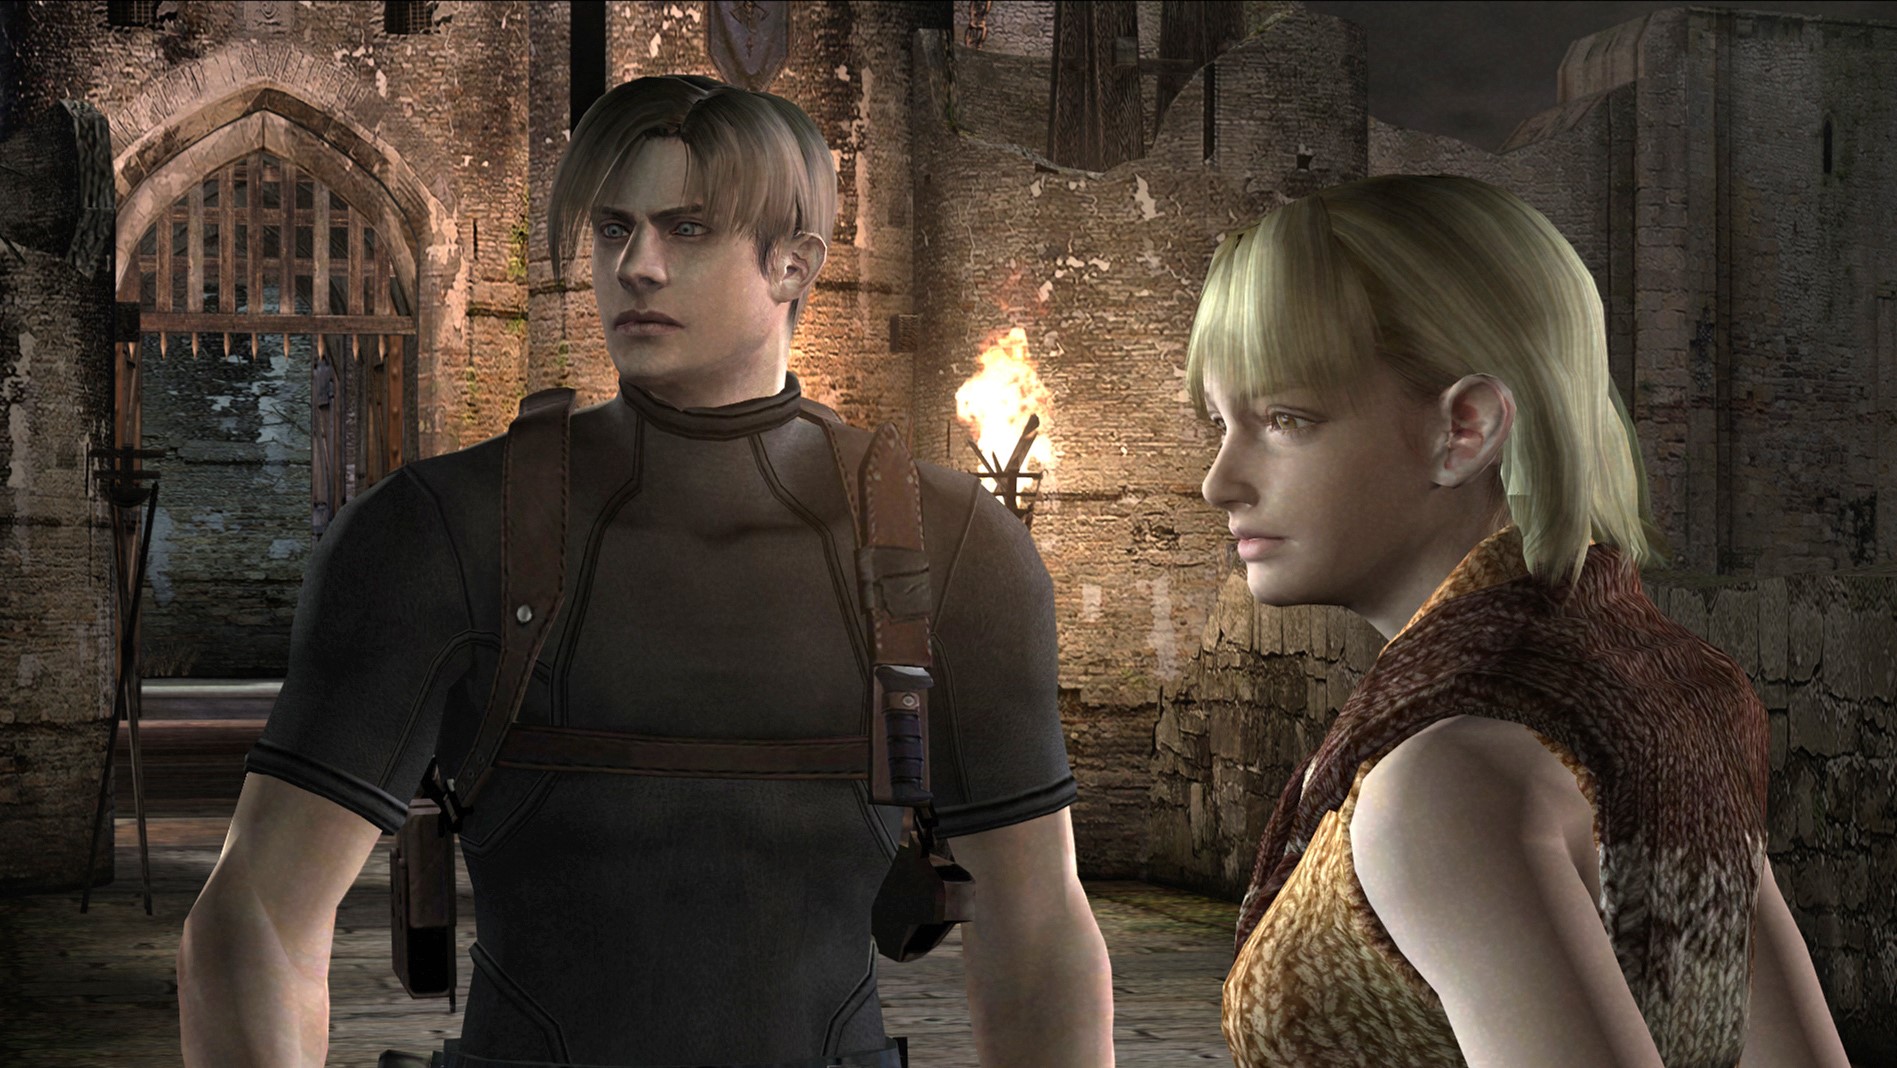 Jogo Resident Evil 2 Xbox One Capcom com o Melhor Preço é no Zoom